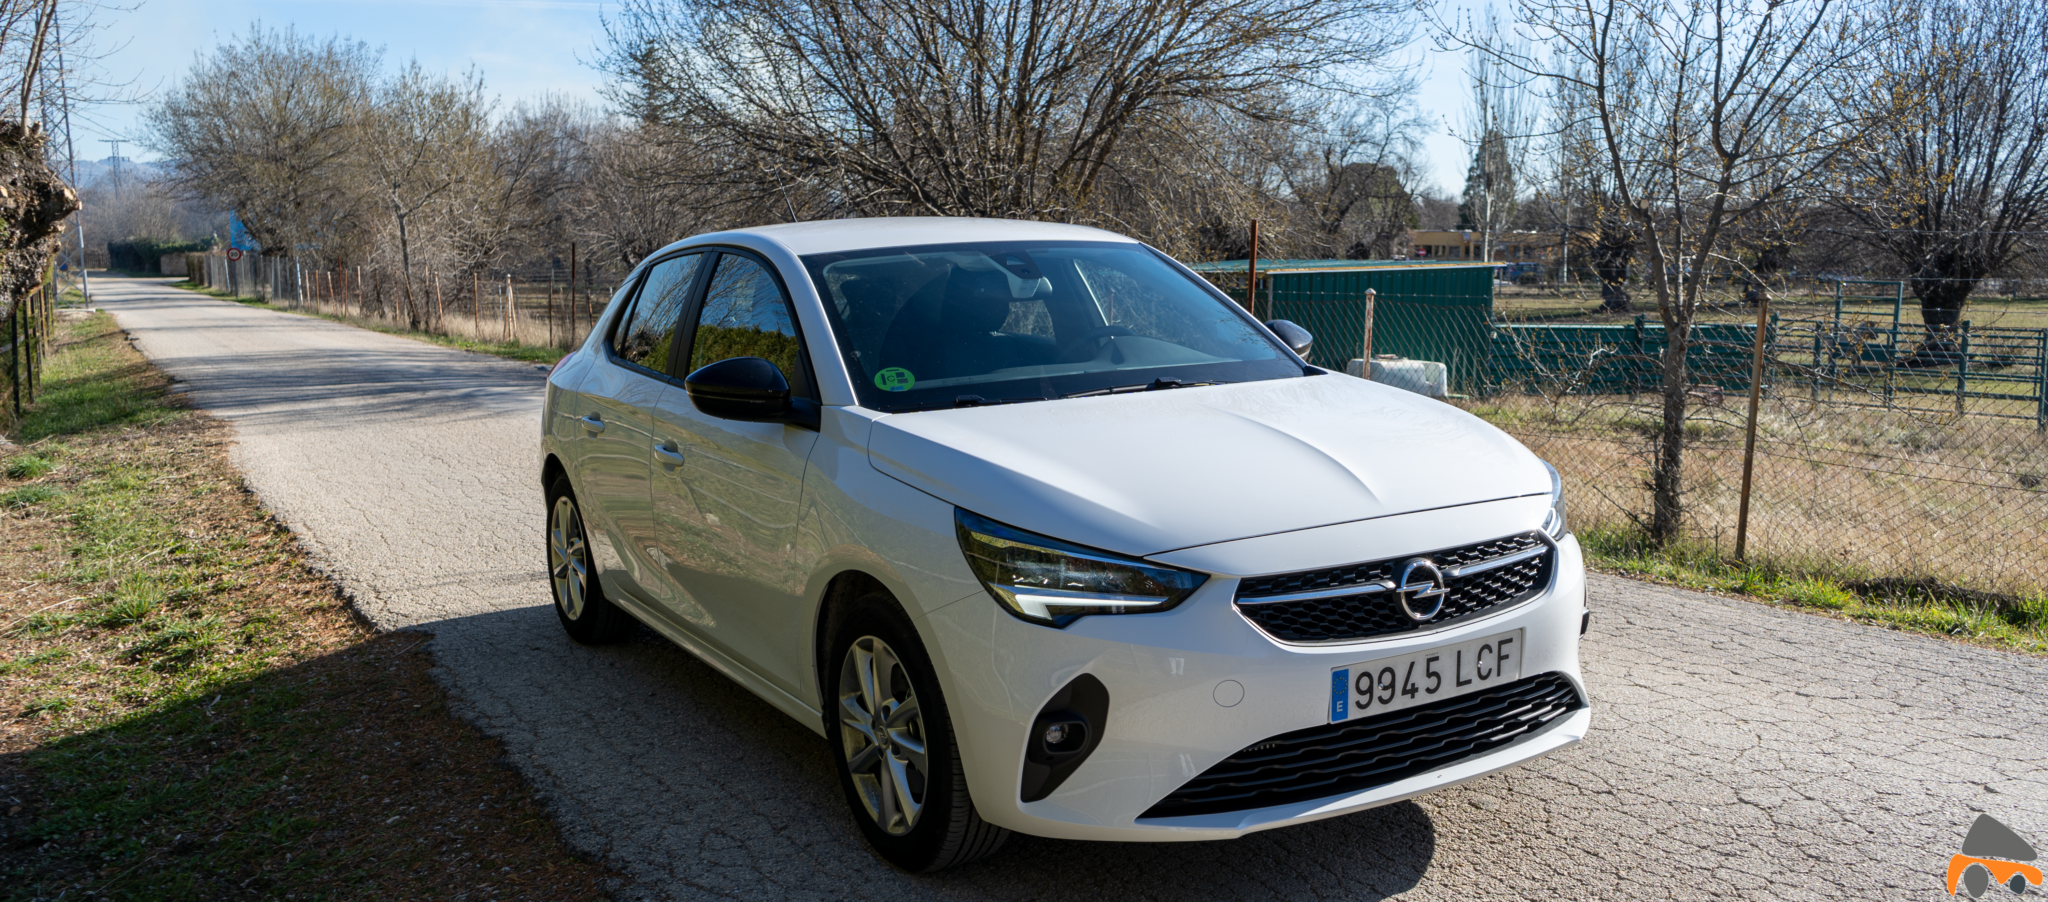 Frontal lateral izquierdo 2 Opel Corsa Edition 2020 - Opel Corsa 2020: Un utilitario para tenerlo muy en cuenta